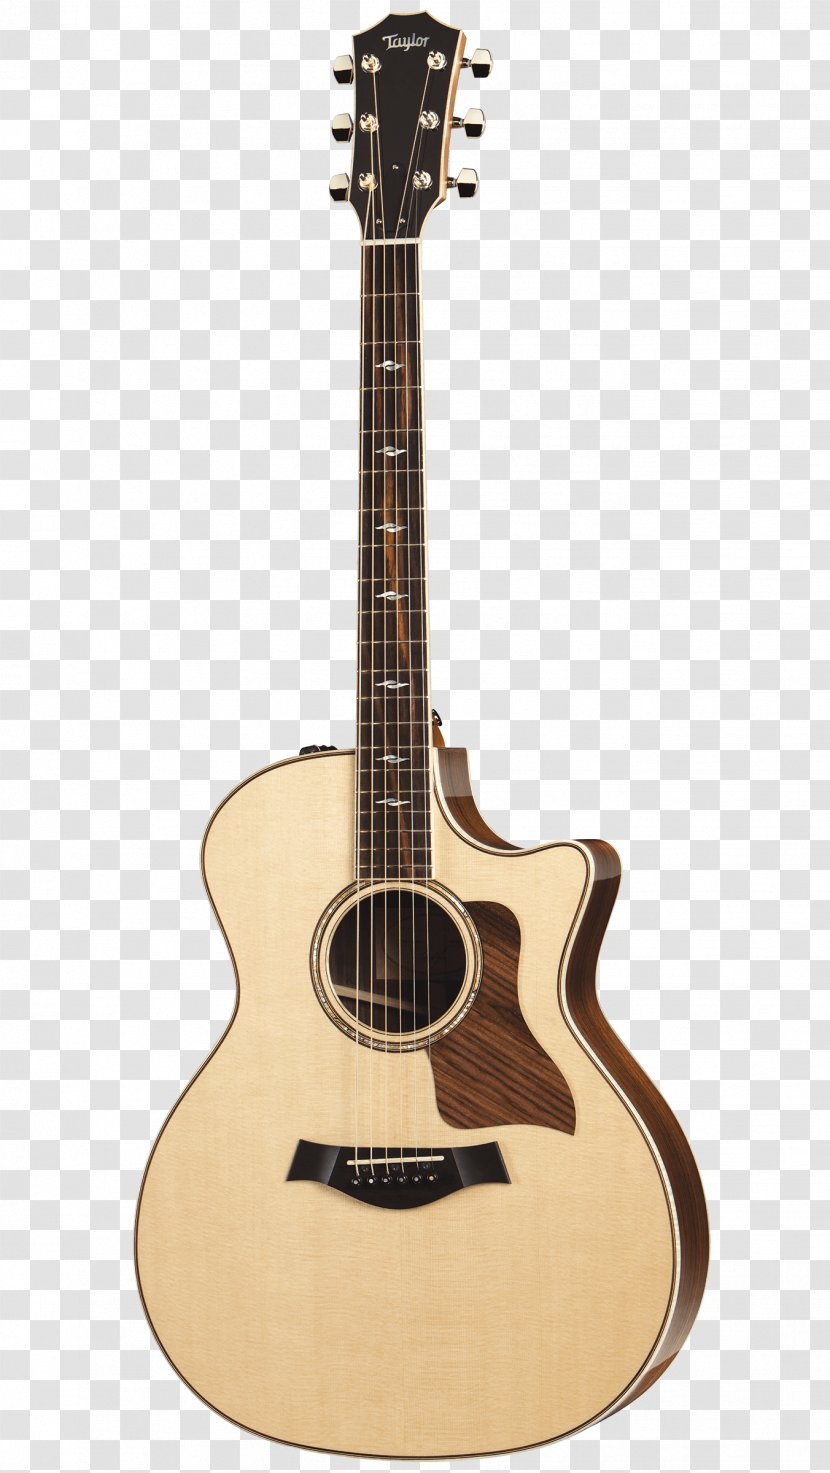 Taylor Guitars 114E Acoustic-Electric Guitar 114CE - Silhouette Transparent PNG